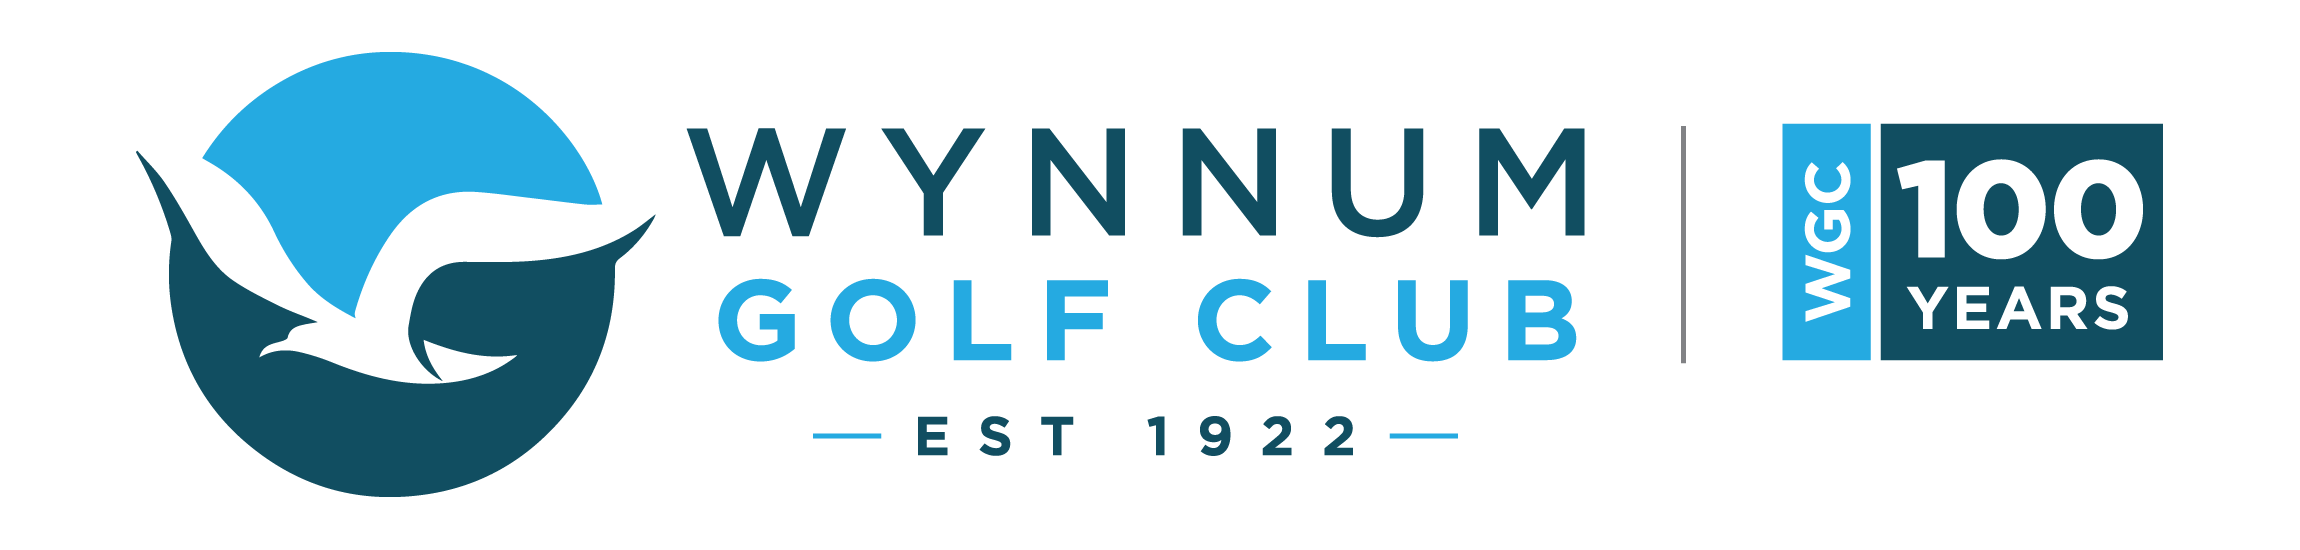 Wynnum Golf Club logo